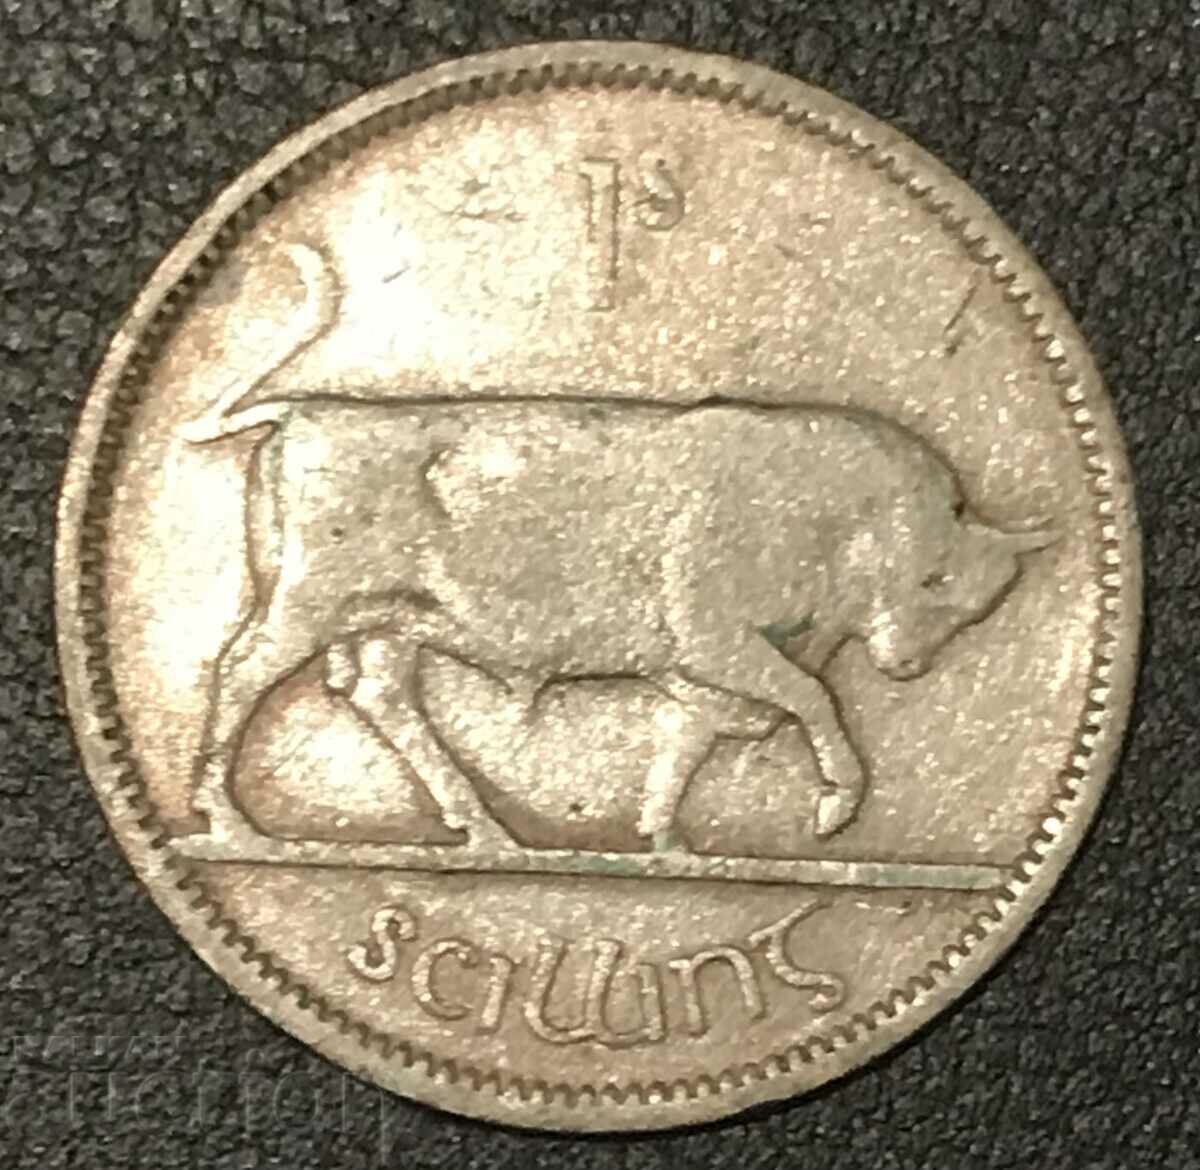 Ireland 1 Shilling 1940 Bull Silver 2ος Παγκόσμιος Πόλεμος